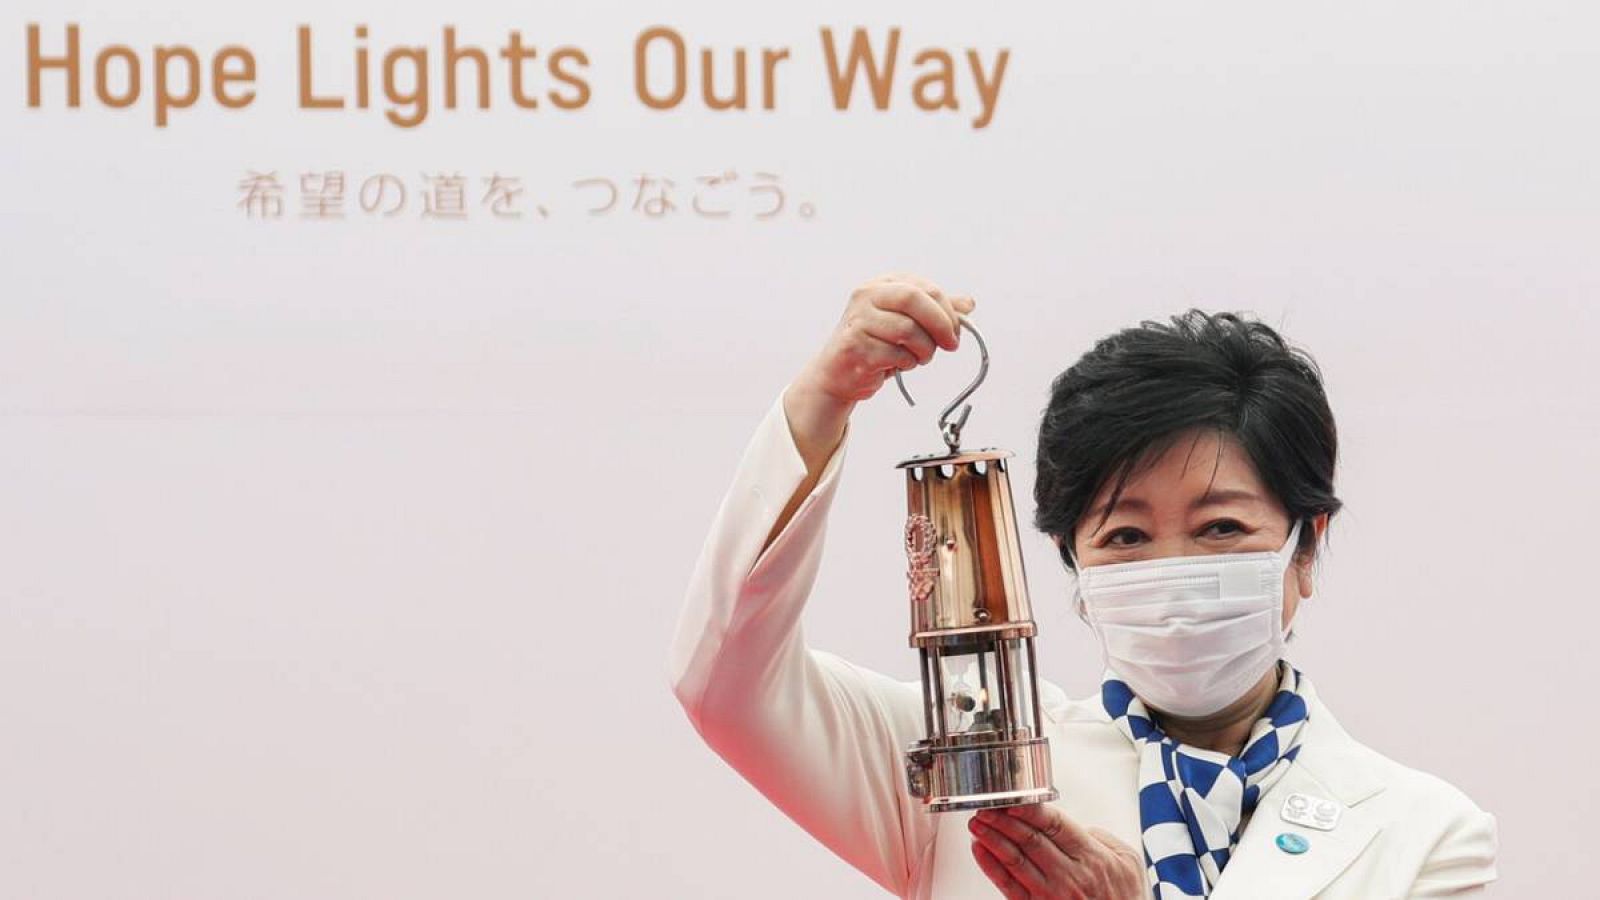 La gobernadora de Tokio, Yuriko Koike, sostiene la linterna de la antorcha olímpica en el Relevo de la Antorcha de Tokio 2020, en Tokio, Japón. 